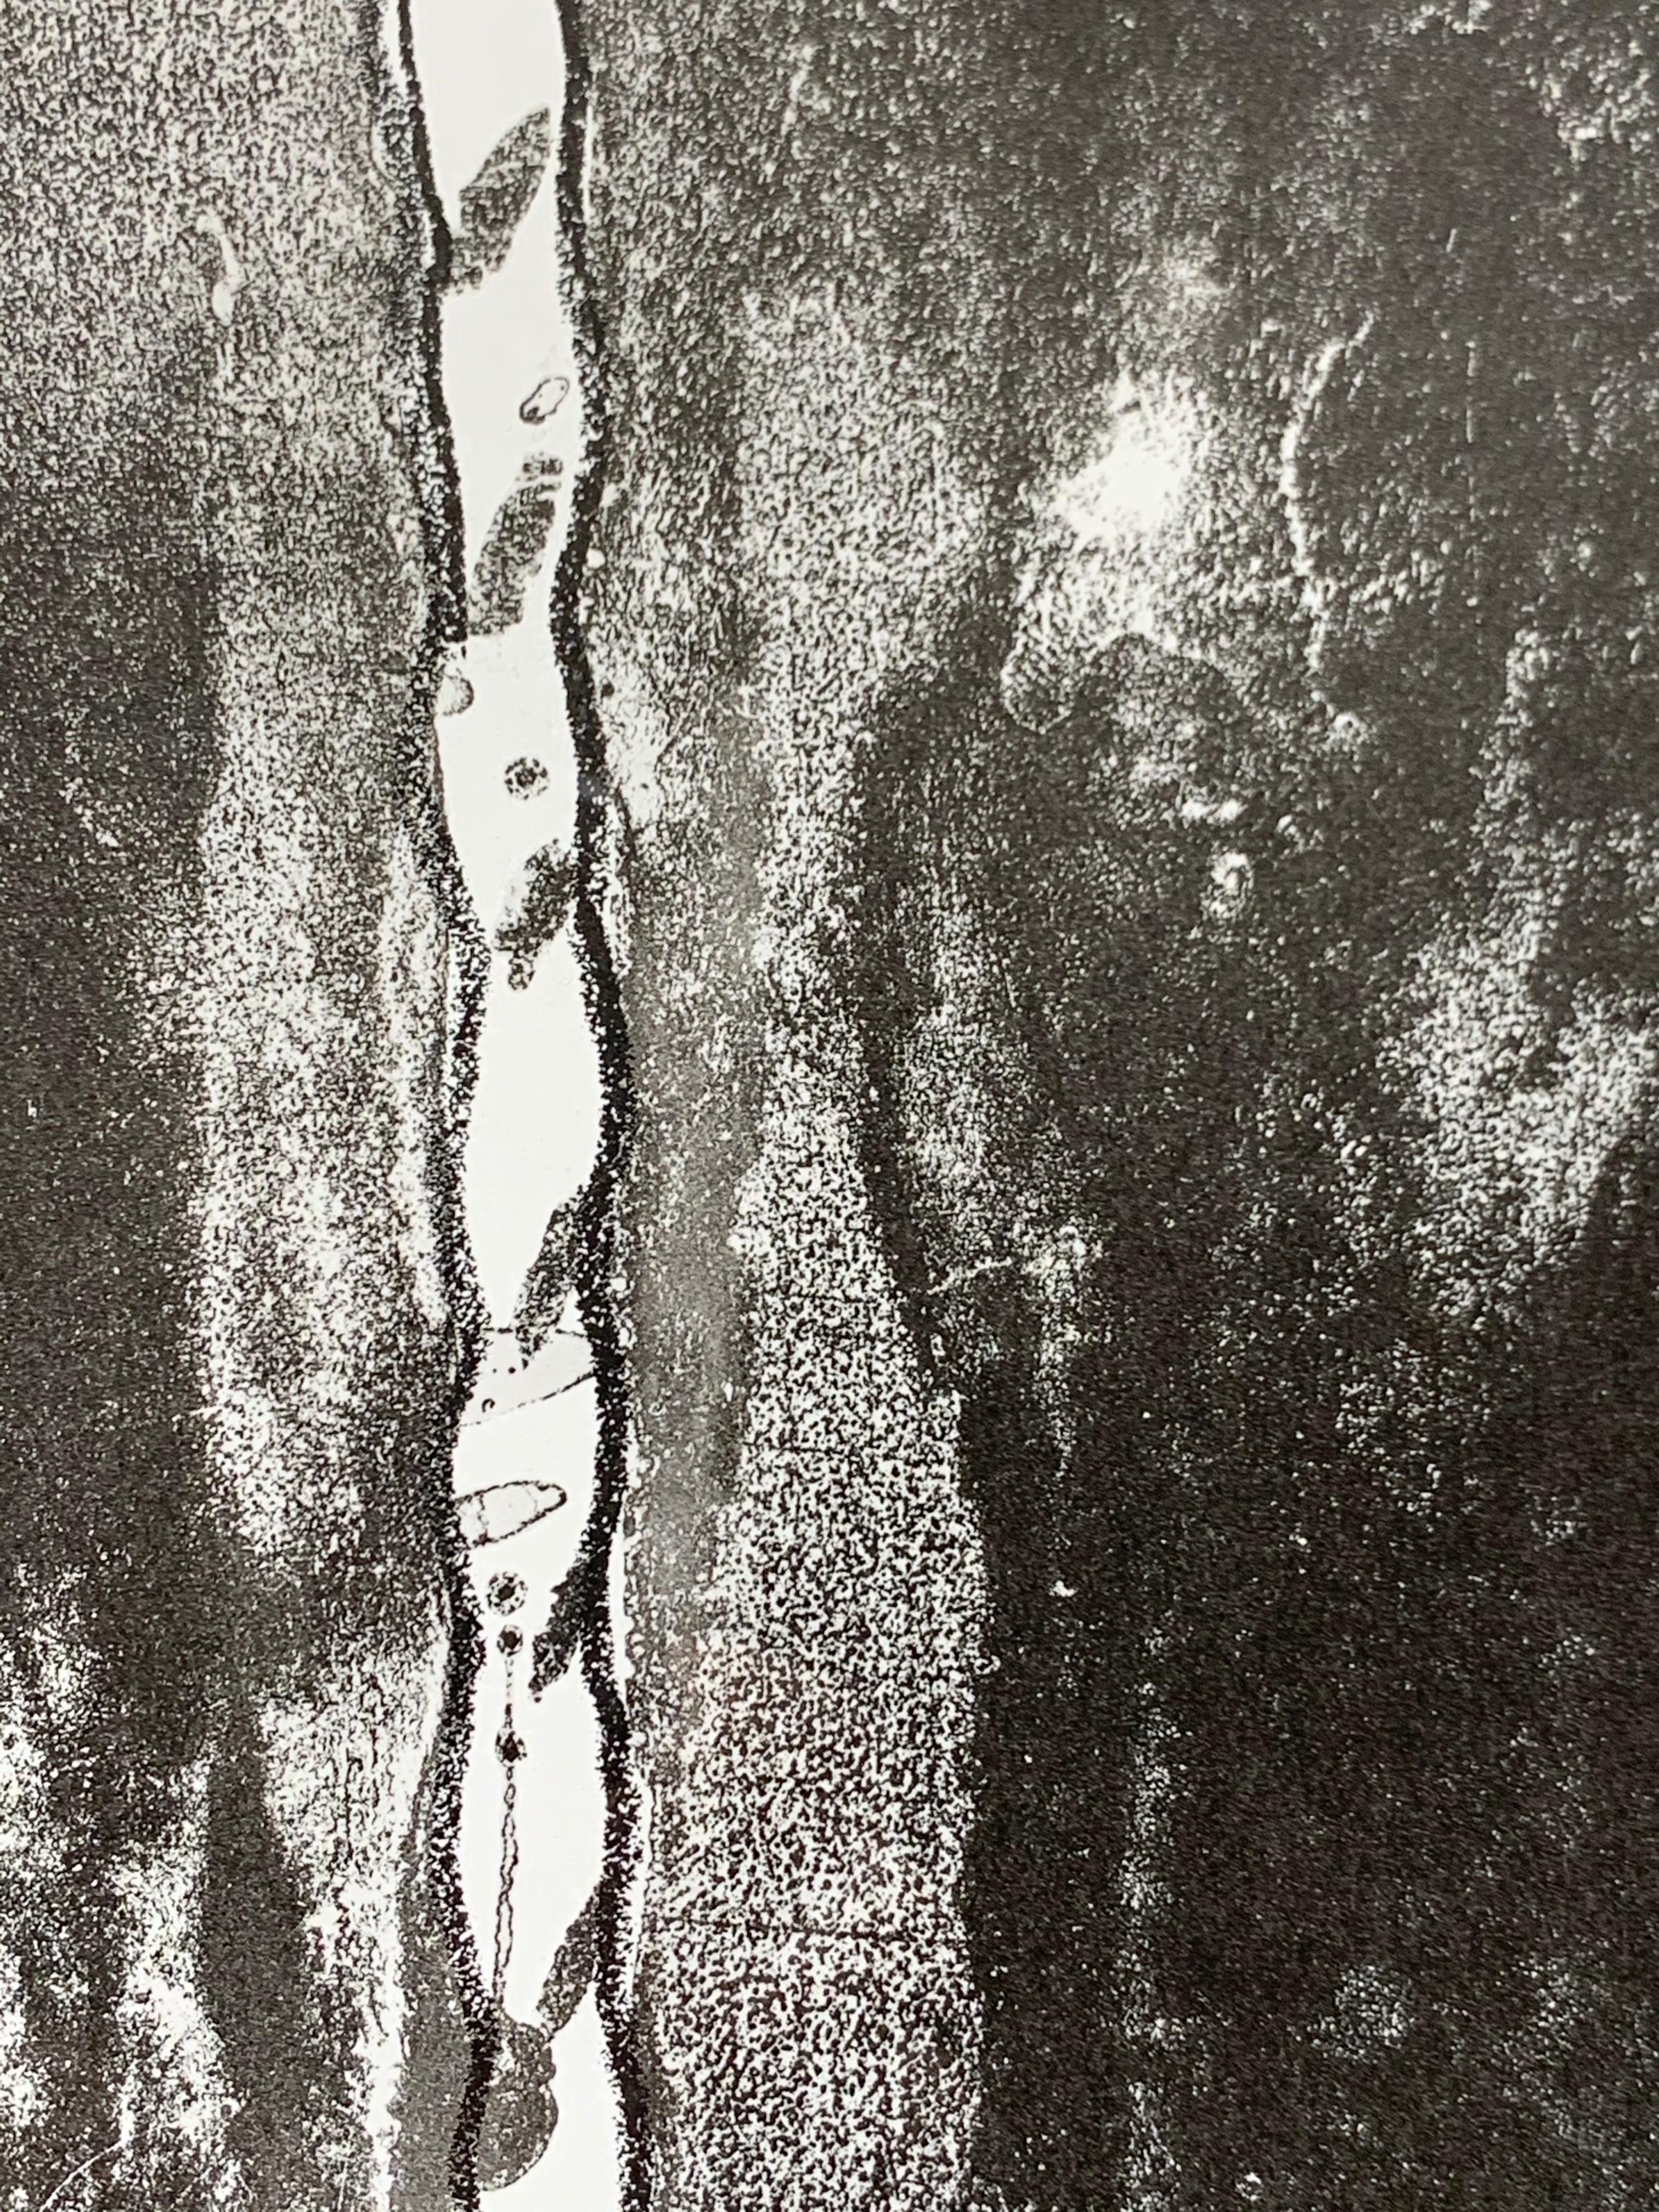 Jasper Johns (né en 1930) : Nature morte récente
Lithographie en noir sur papier vélin, 1966, signée et datée '2016' à l'encre.

34 1/2 x 19 3/4 in. (feuille), 36 1/2 x 21 1/2 in. (cadre).

Provenance : 

Propriété de la collection de Tom